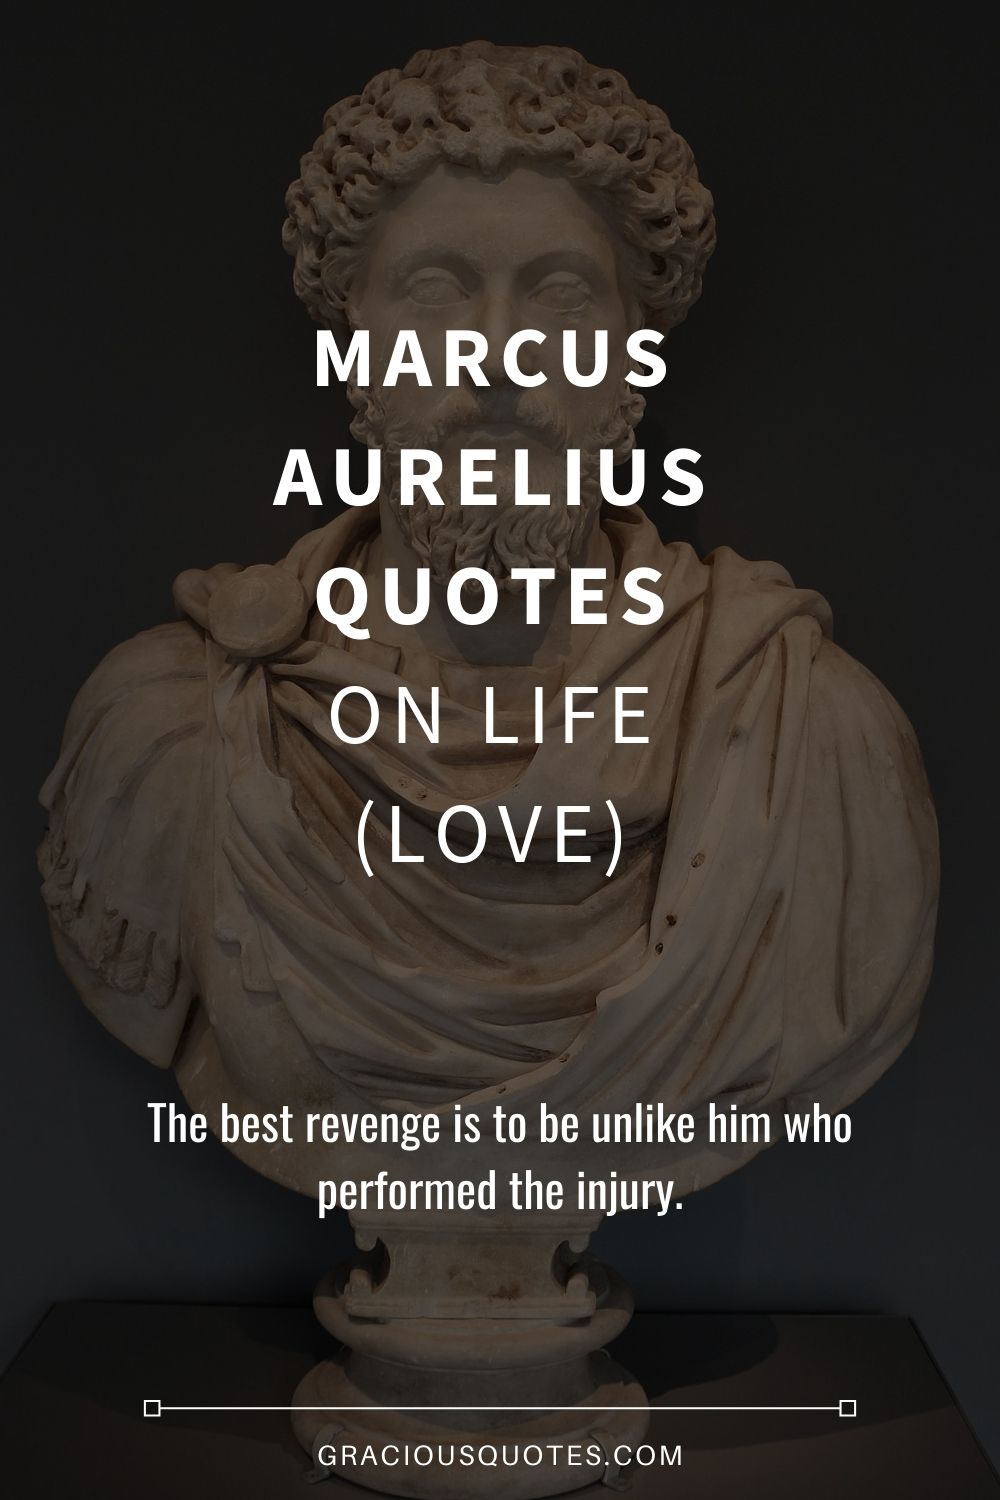 Marcus Aurelius Quotes on Life (LOVE) - Gracious Quotes